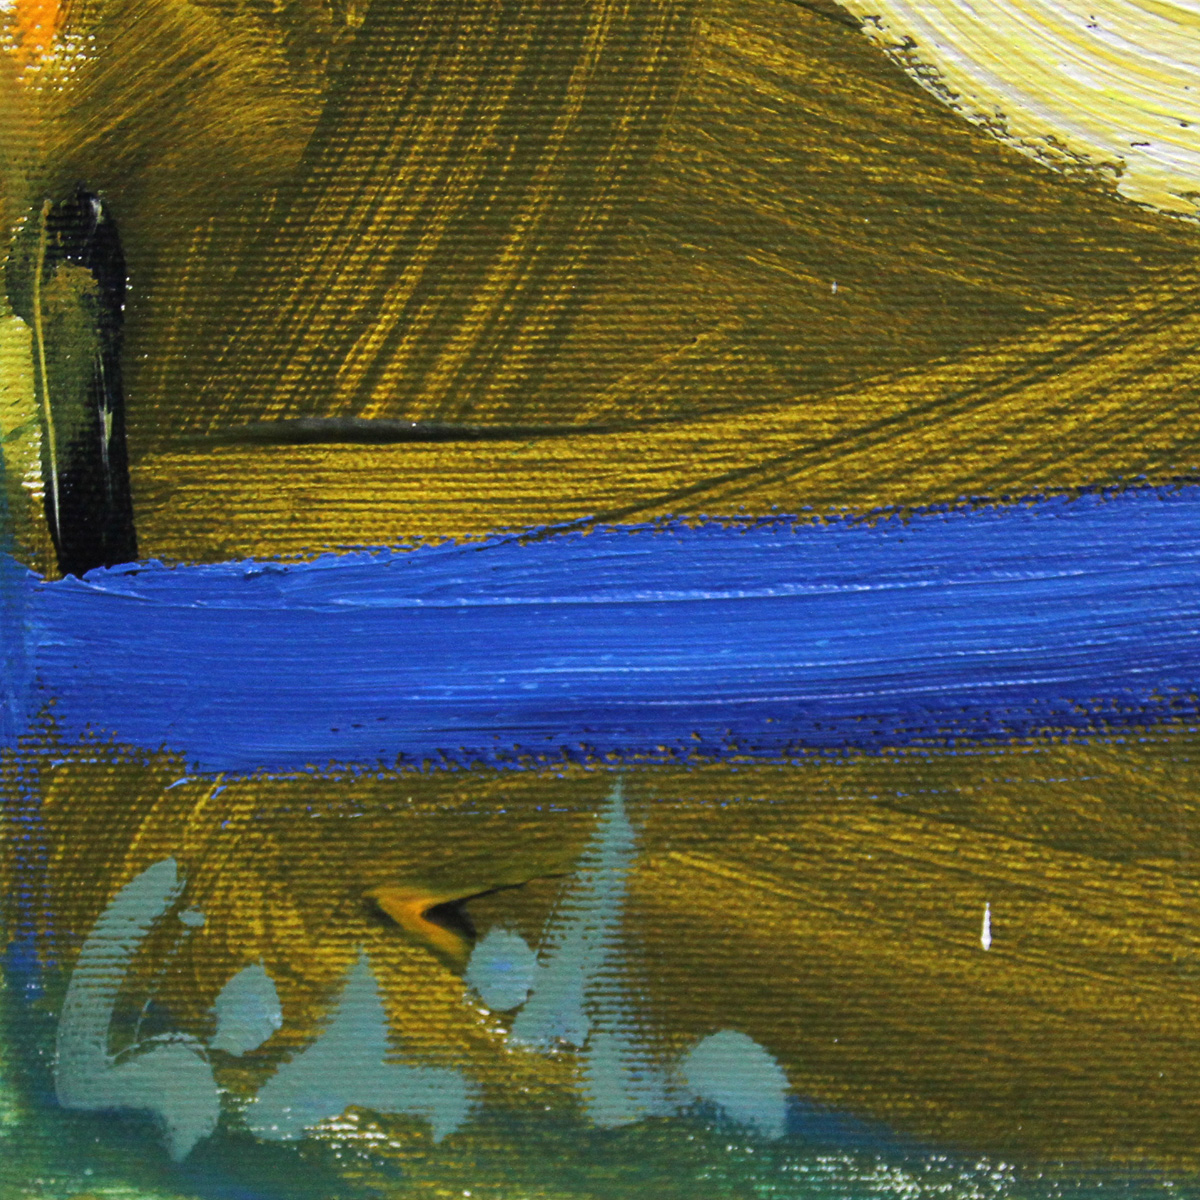 M. Cieśla: "Abstrakt von Musik inspiriert - Sonny Rollins", Expressionistisches Acrylgemälde, Origin